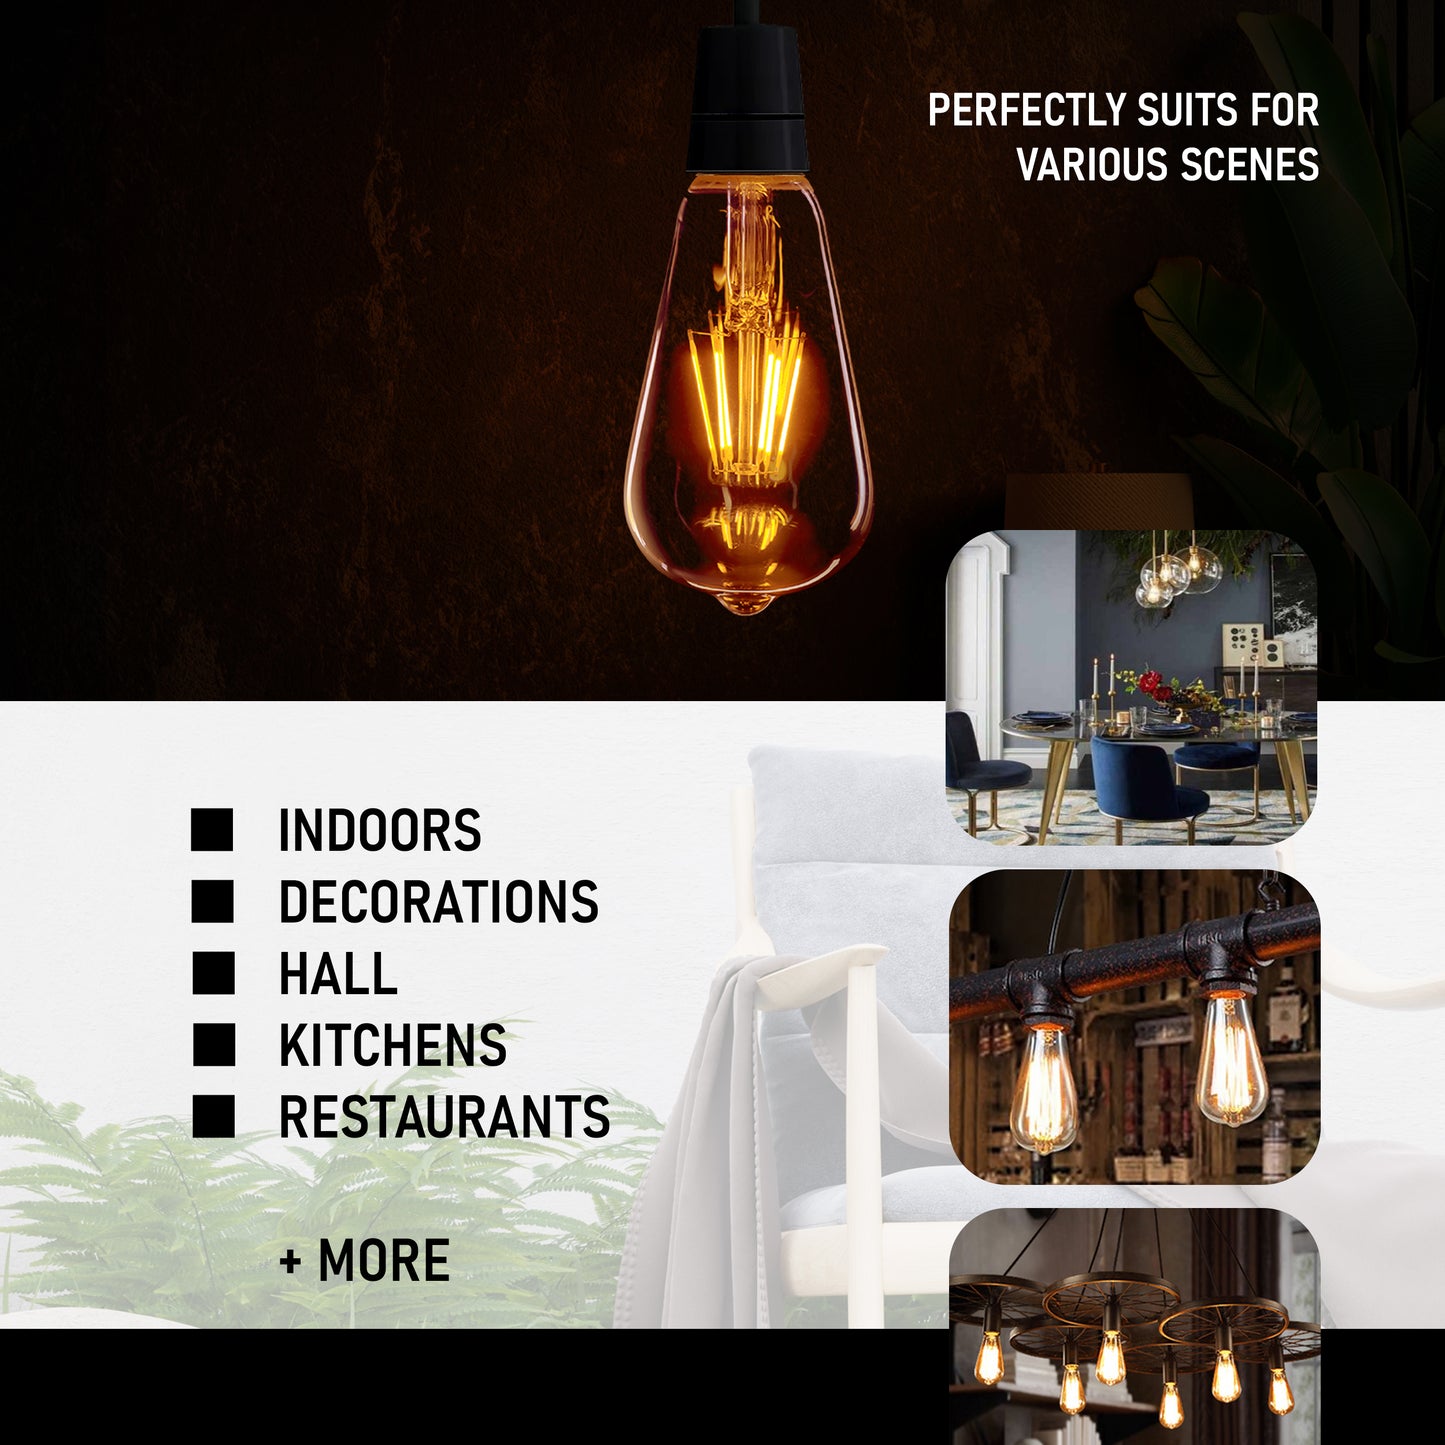 Dimmbare Glühbirnen und dekorative Vintage-Glühbirnen - stilvolle Beleuchtung - Anwendungsbild